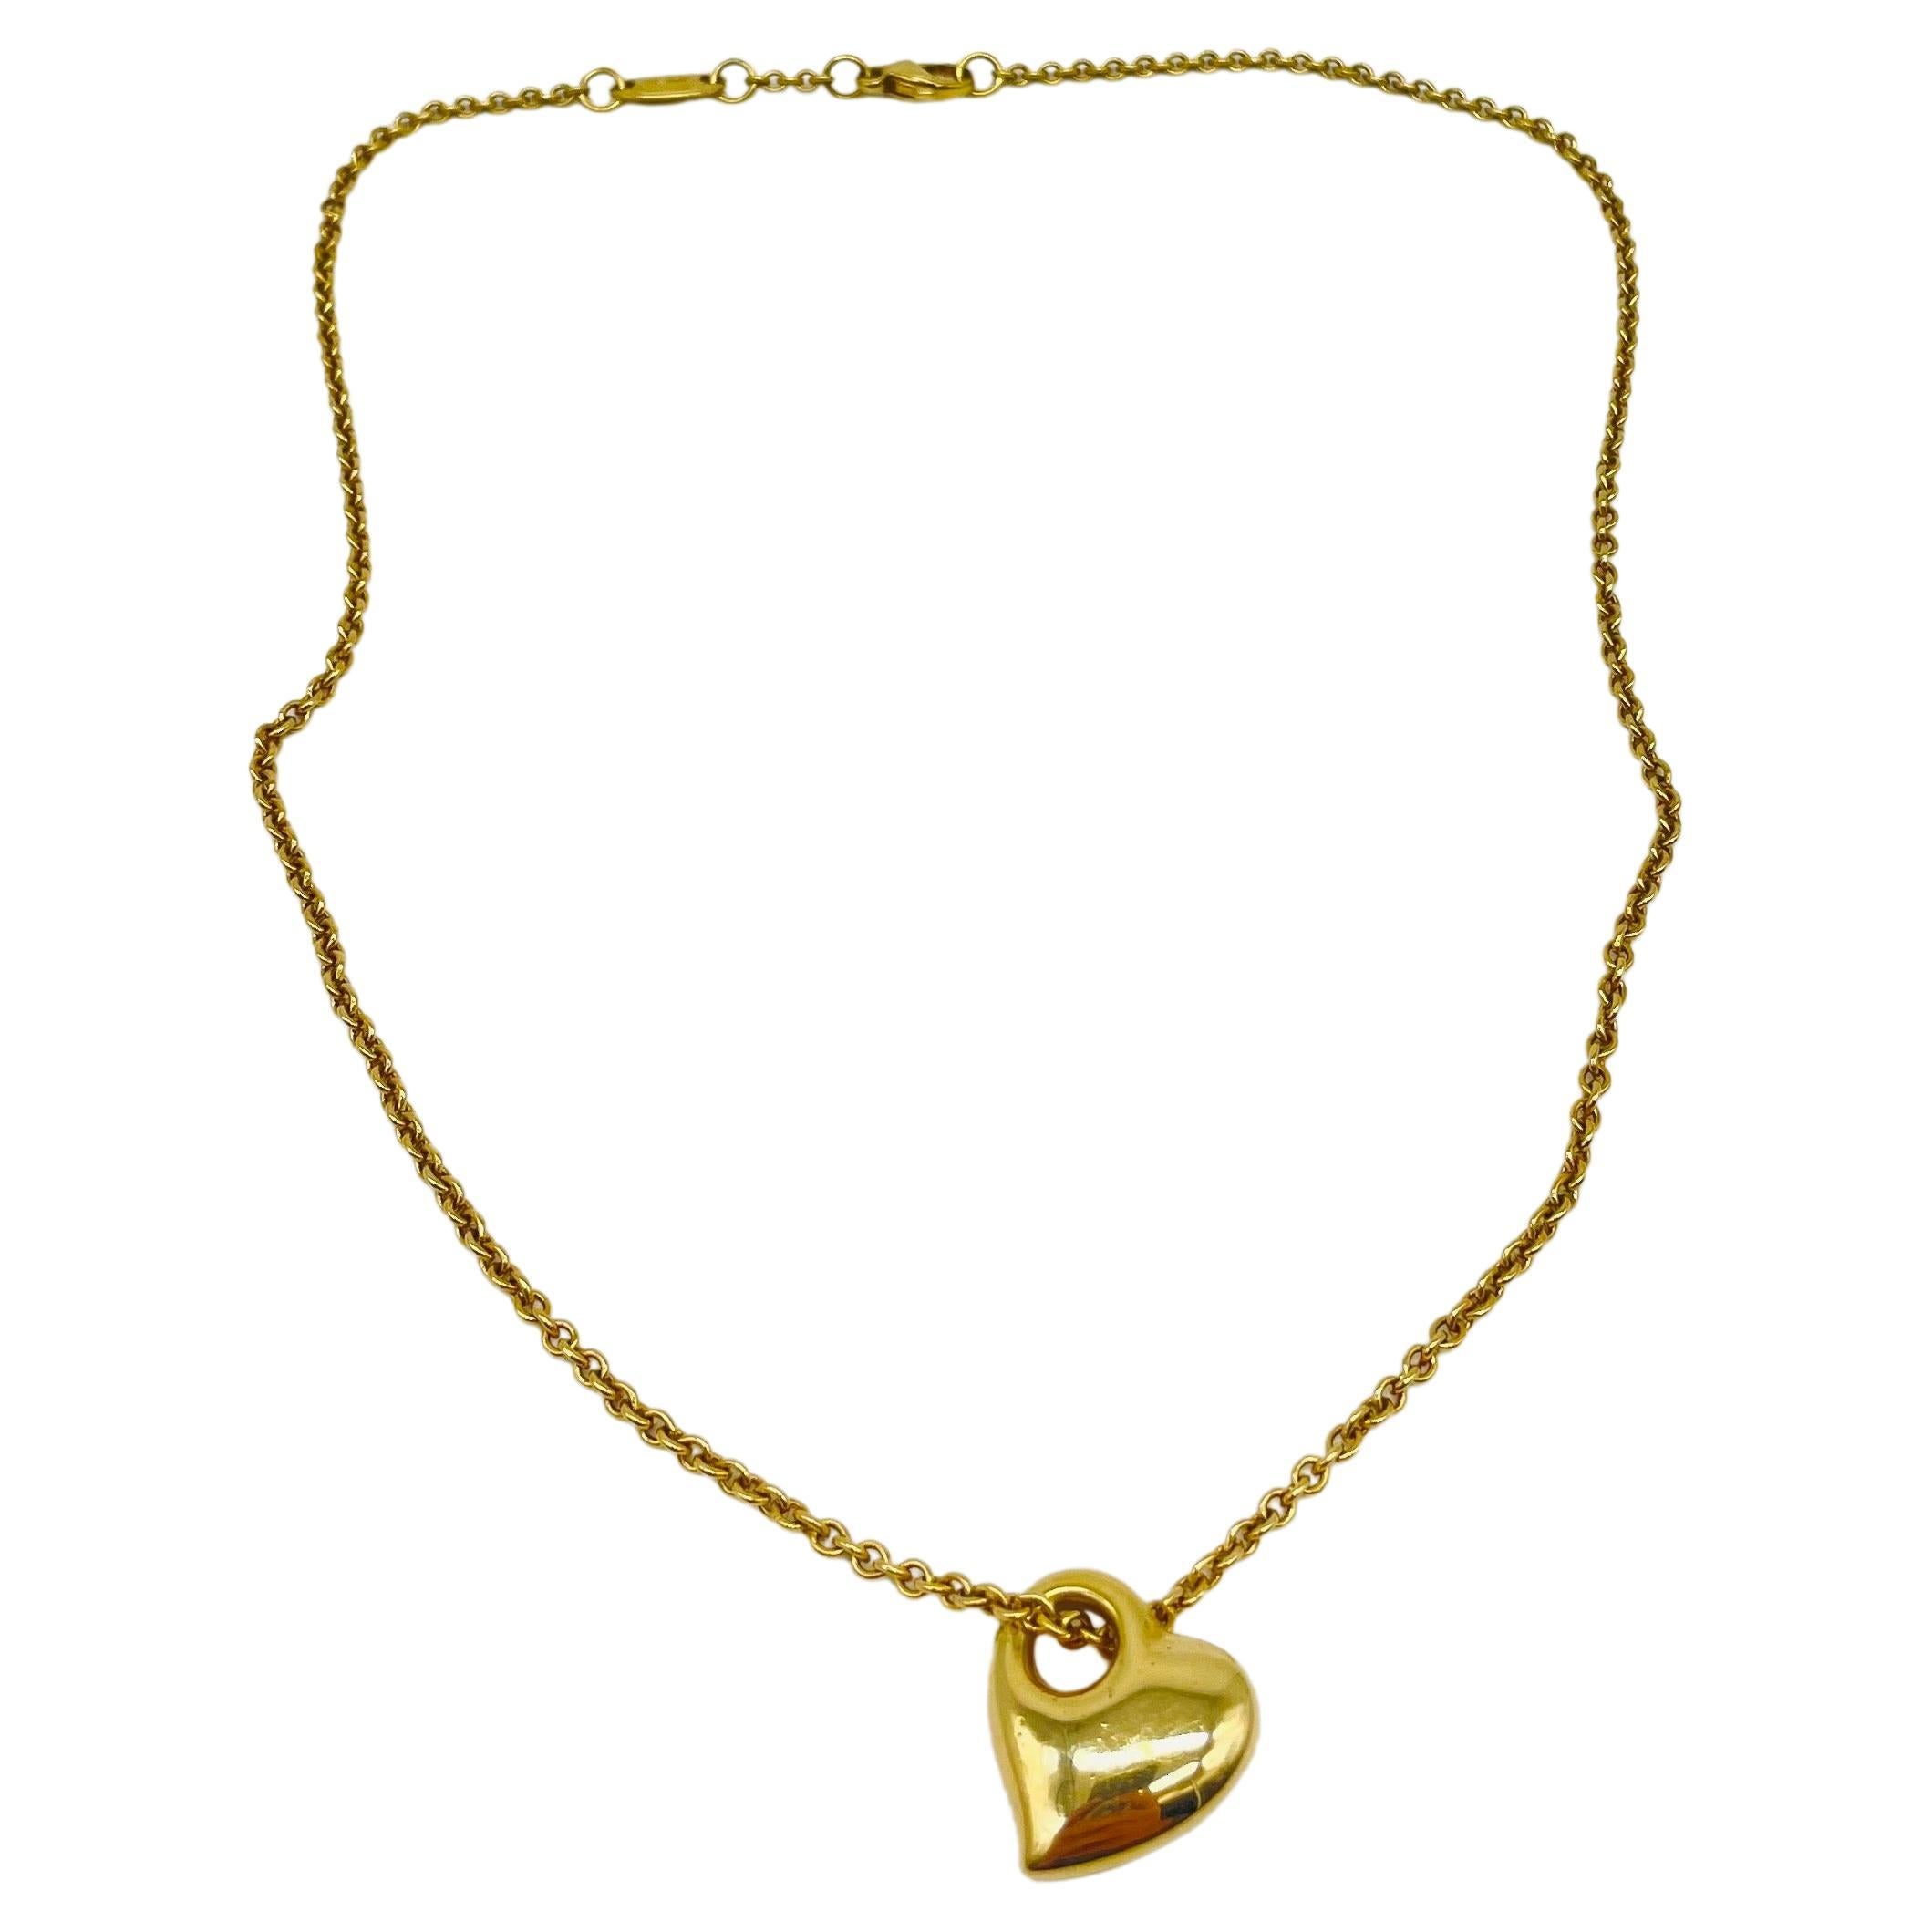 Tauchen Sie ein in die traumhafte Schönheit dieser exquisiten goldenen Halskette, die mit einem atemberaubenden herzförmigen Anhänger geschmückt ist. Diese wunderschöne Halskette aus 14-karätigem Gelbgold verströmt einen strahlenden Glanz, der das